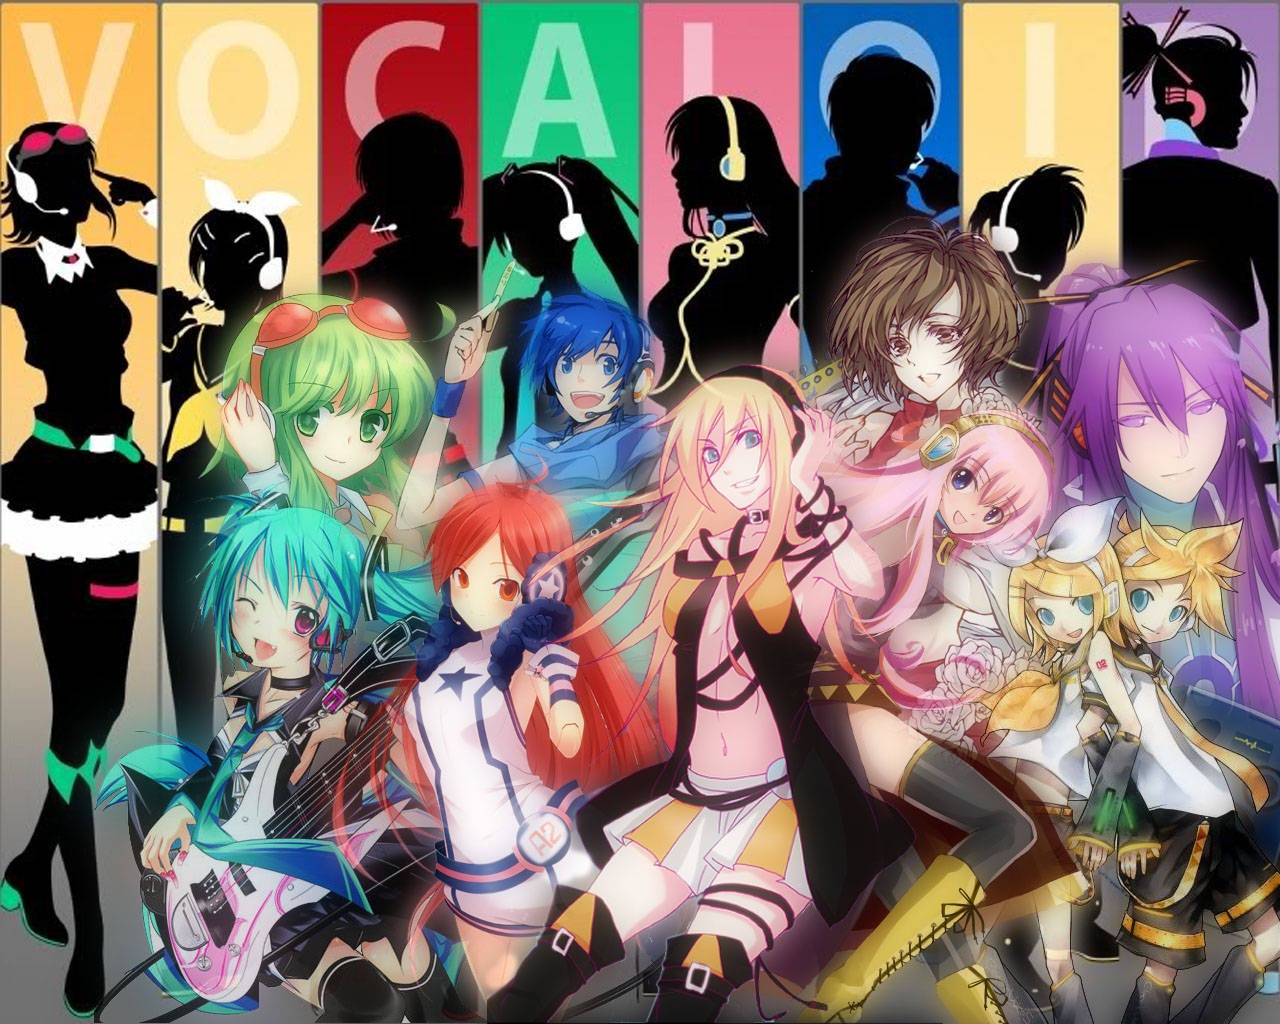 Vocaloid Cast